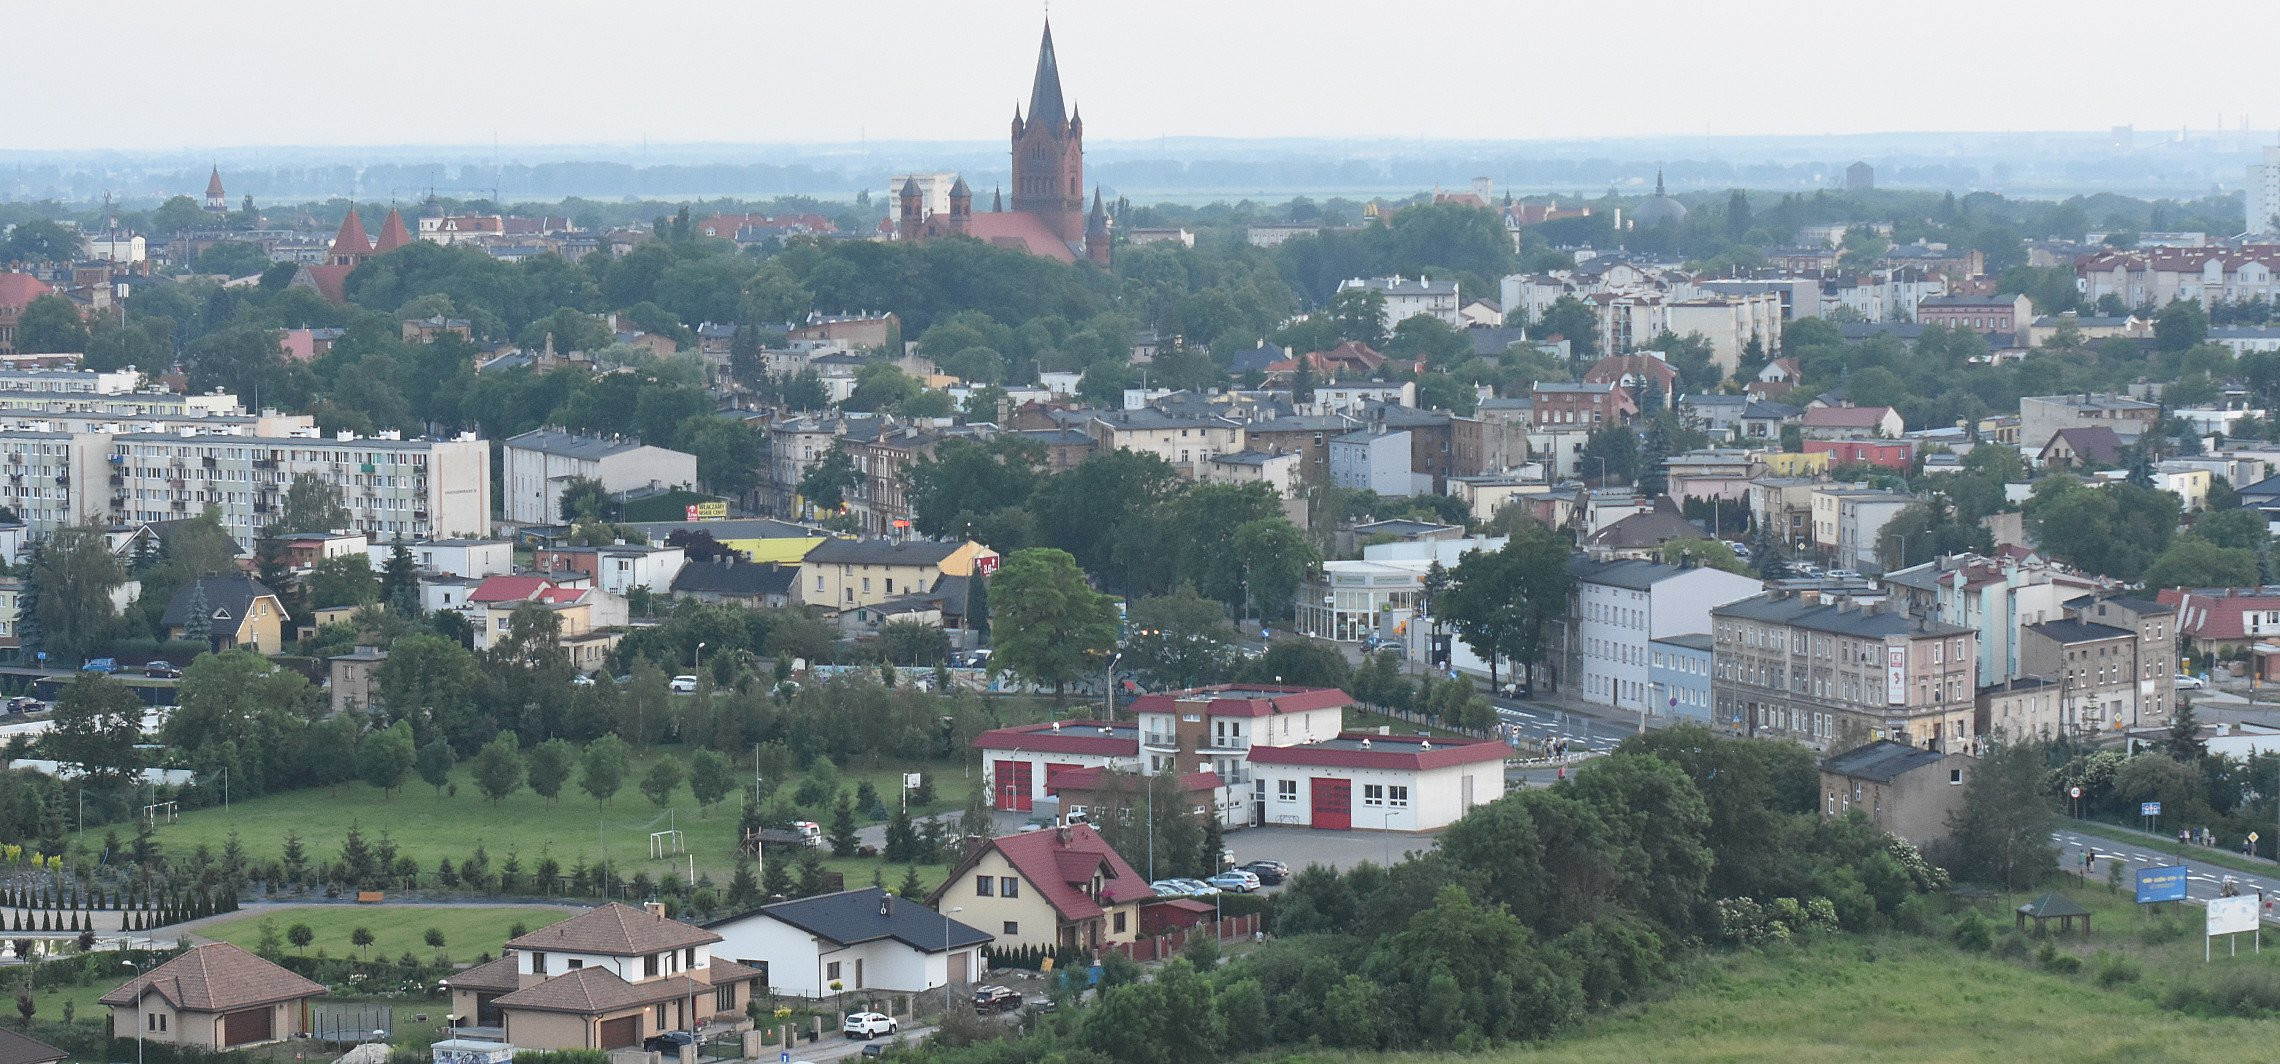 Inowrocław - Inowrocław najgęściej zaludnioną gminą